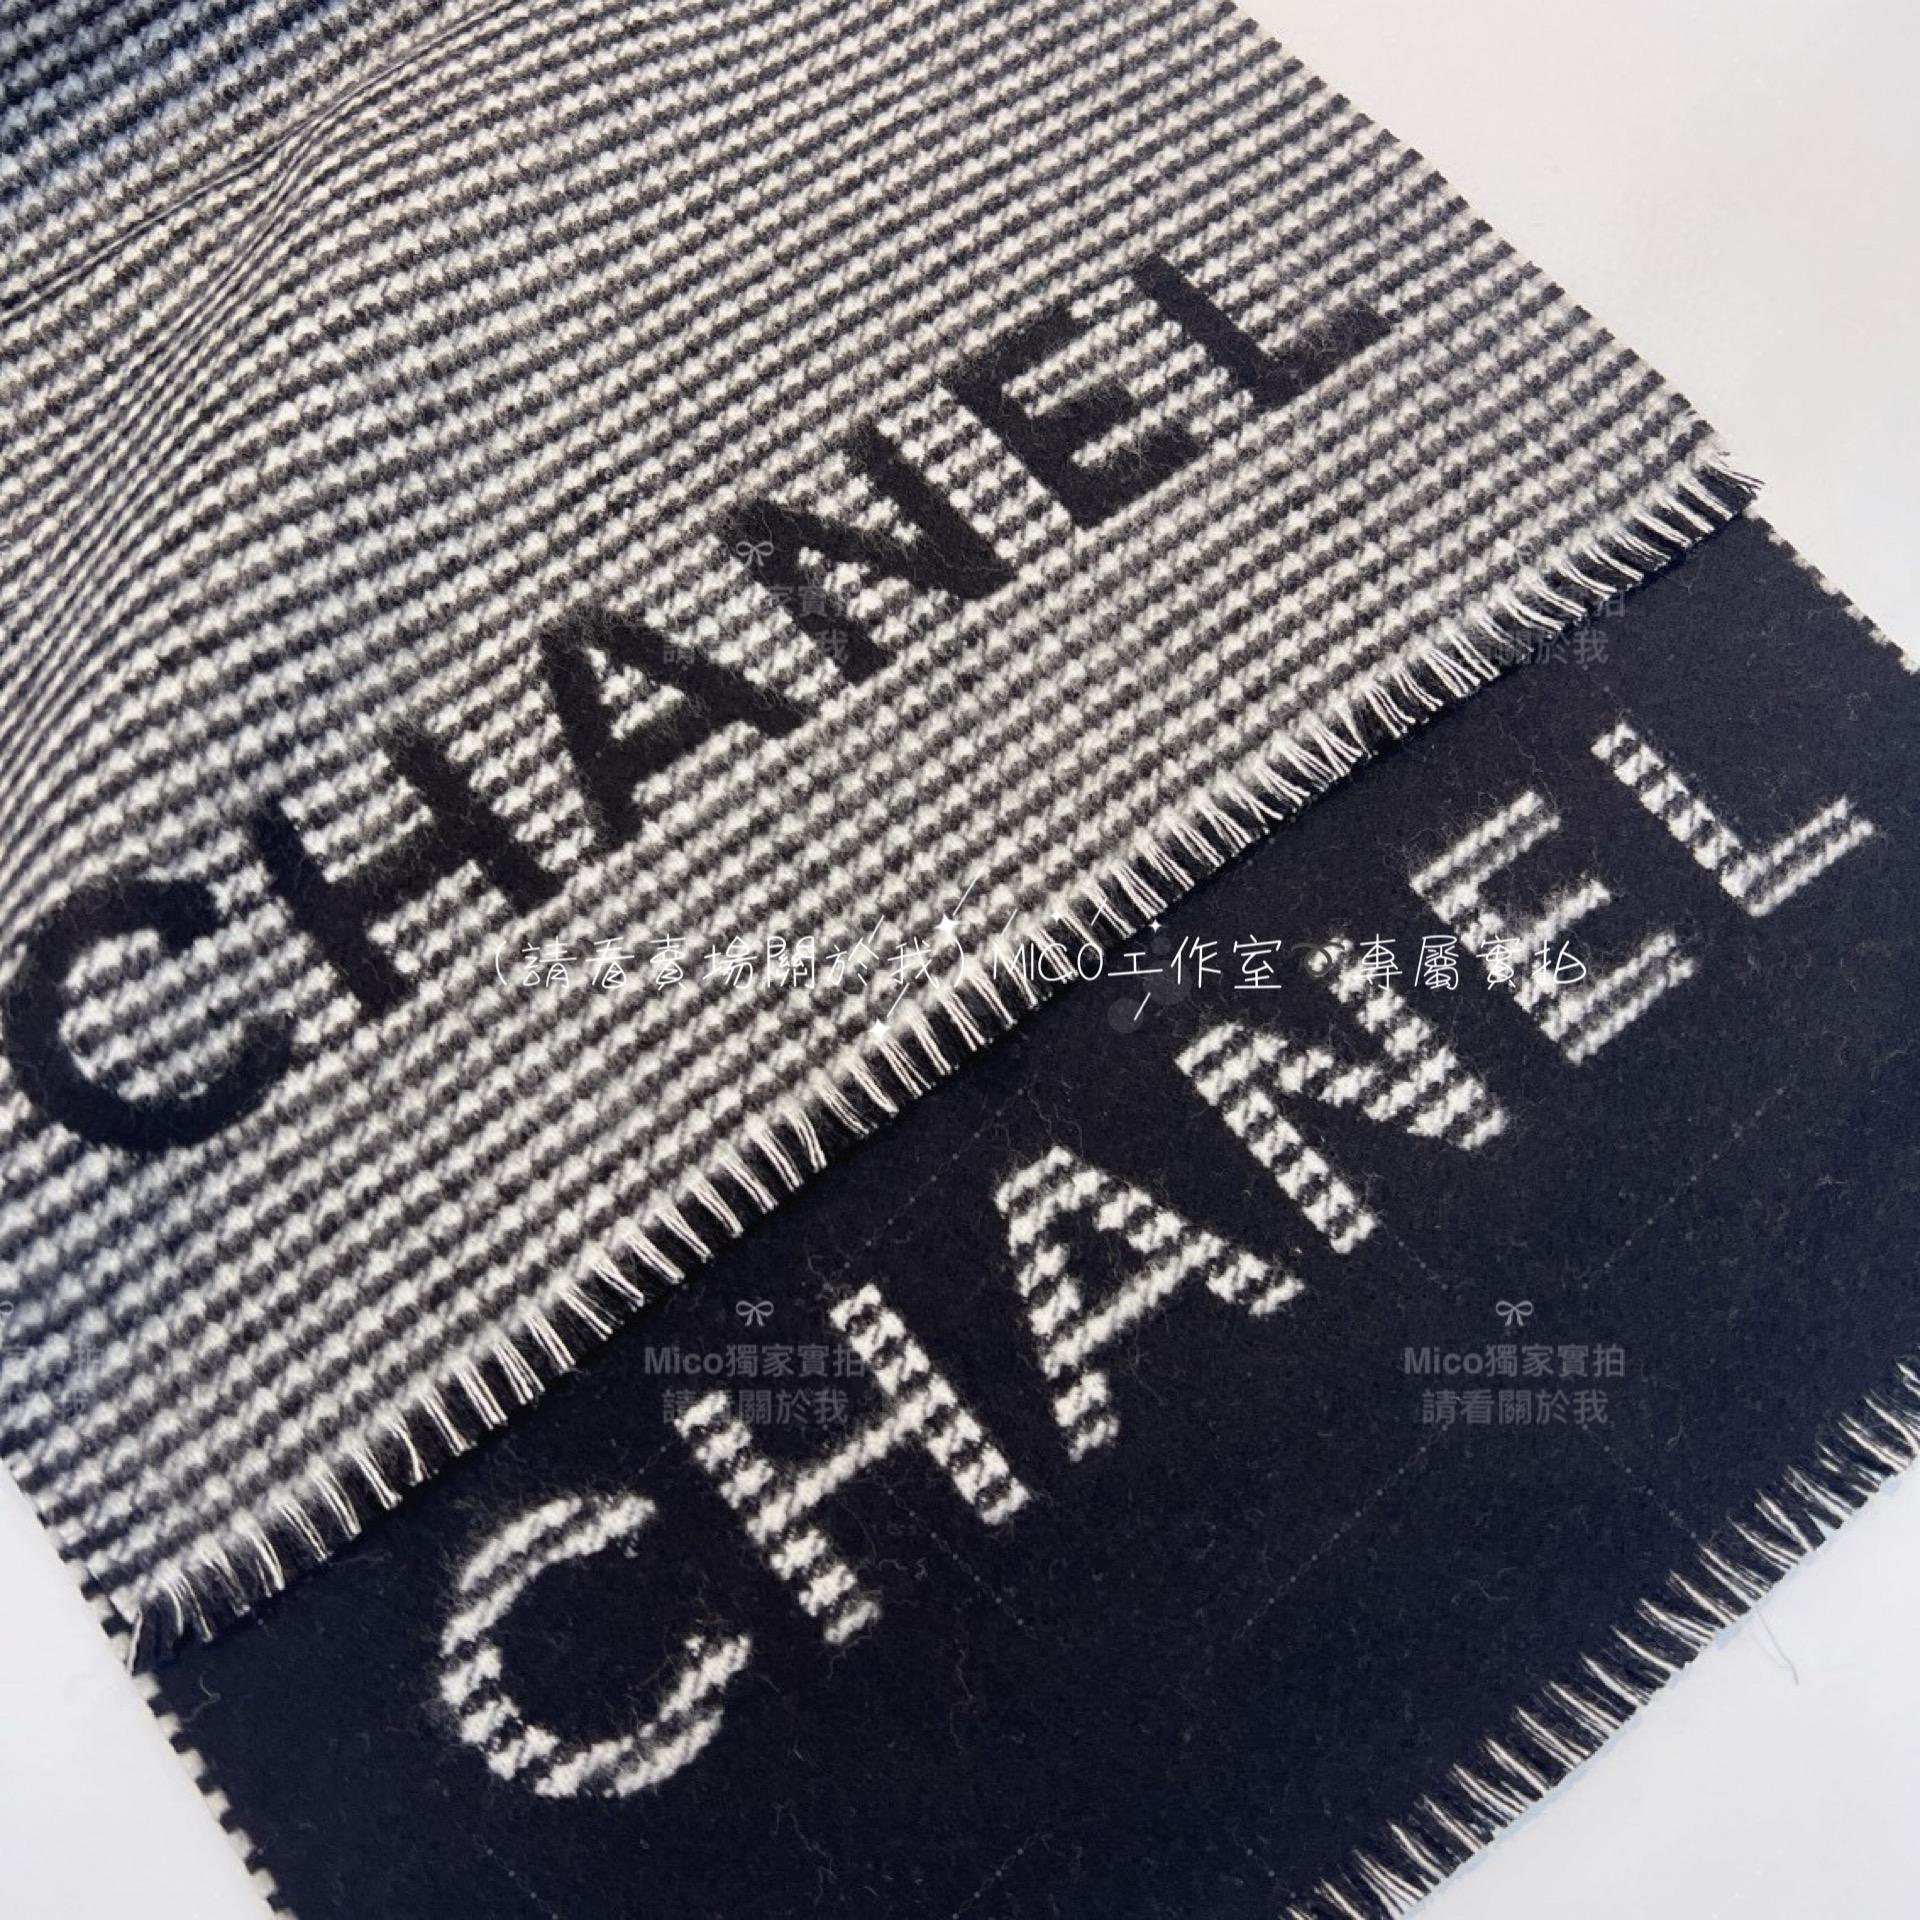 Chanel 高訂版 《 23B 千鳥格圍巾》 Size：185×42cm